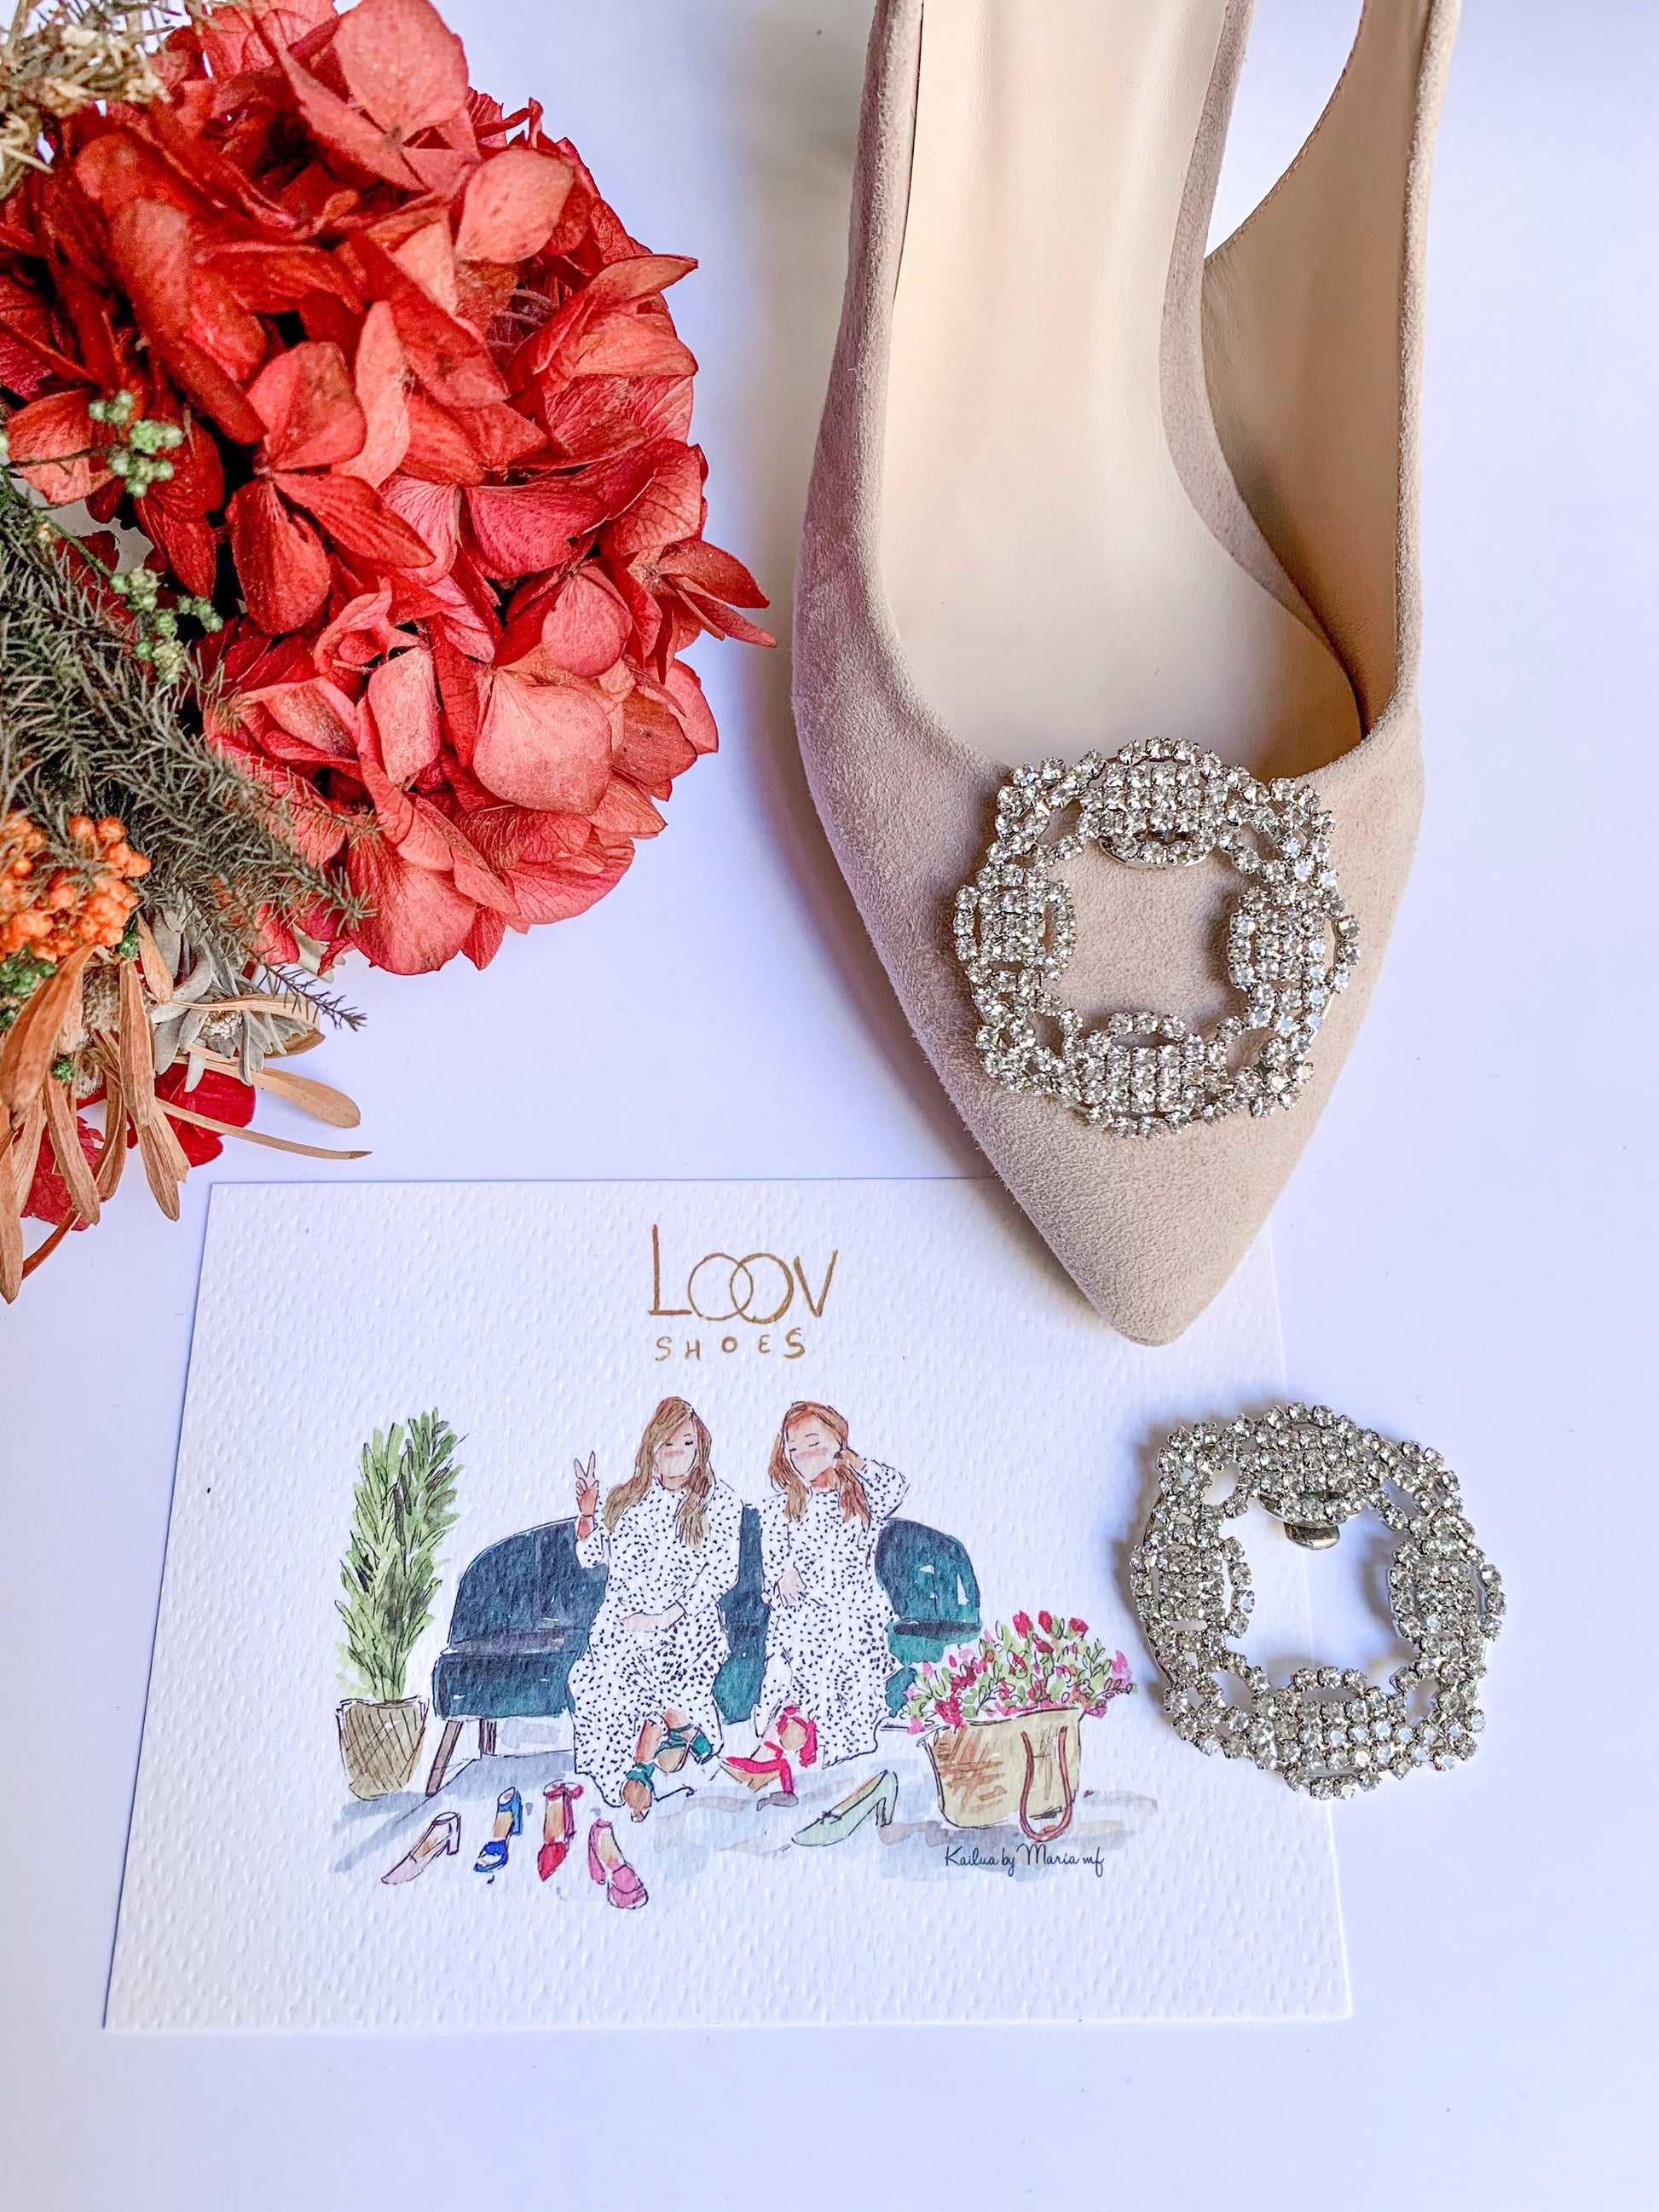 Adorno para Zapatos | Vintage de cristales-adornos, salón, zapato plano, zapatos personalizados-Loovshoes